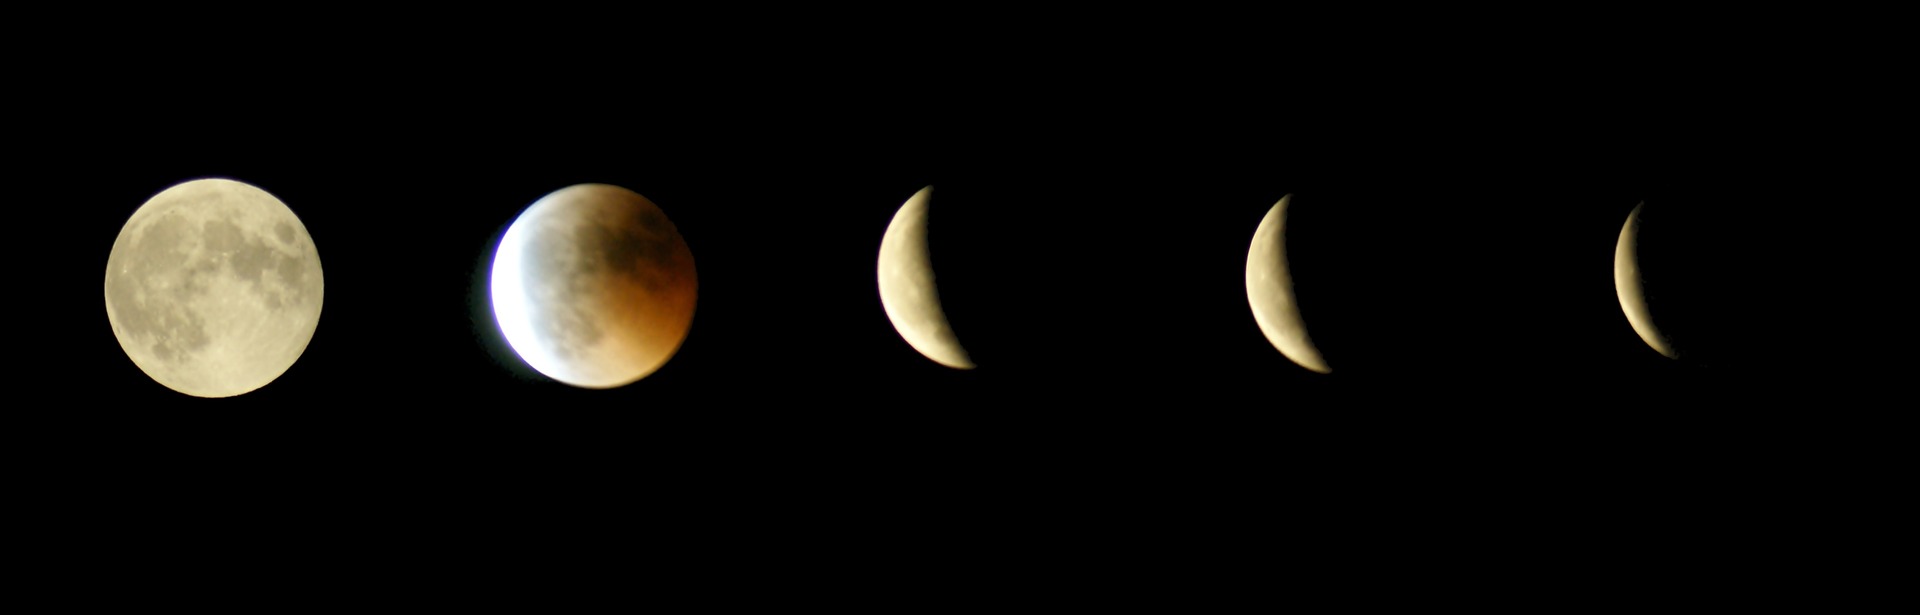 lunar-eclipse-1192664_1920